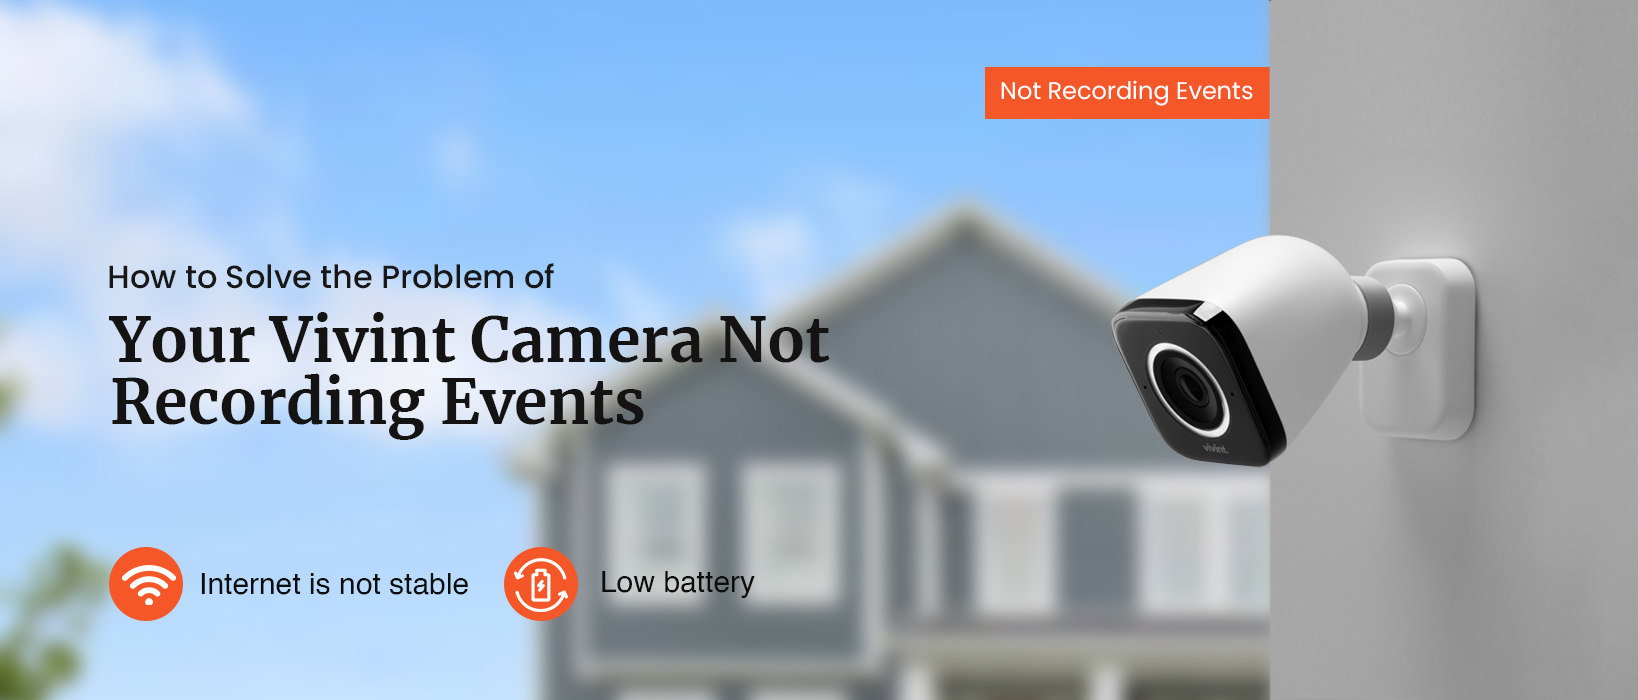 How to Fix Vivint Camera Not Recording Events